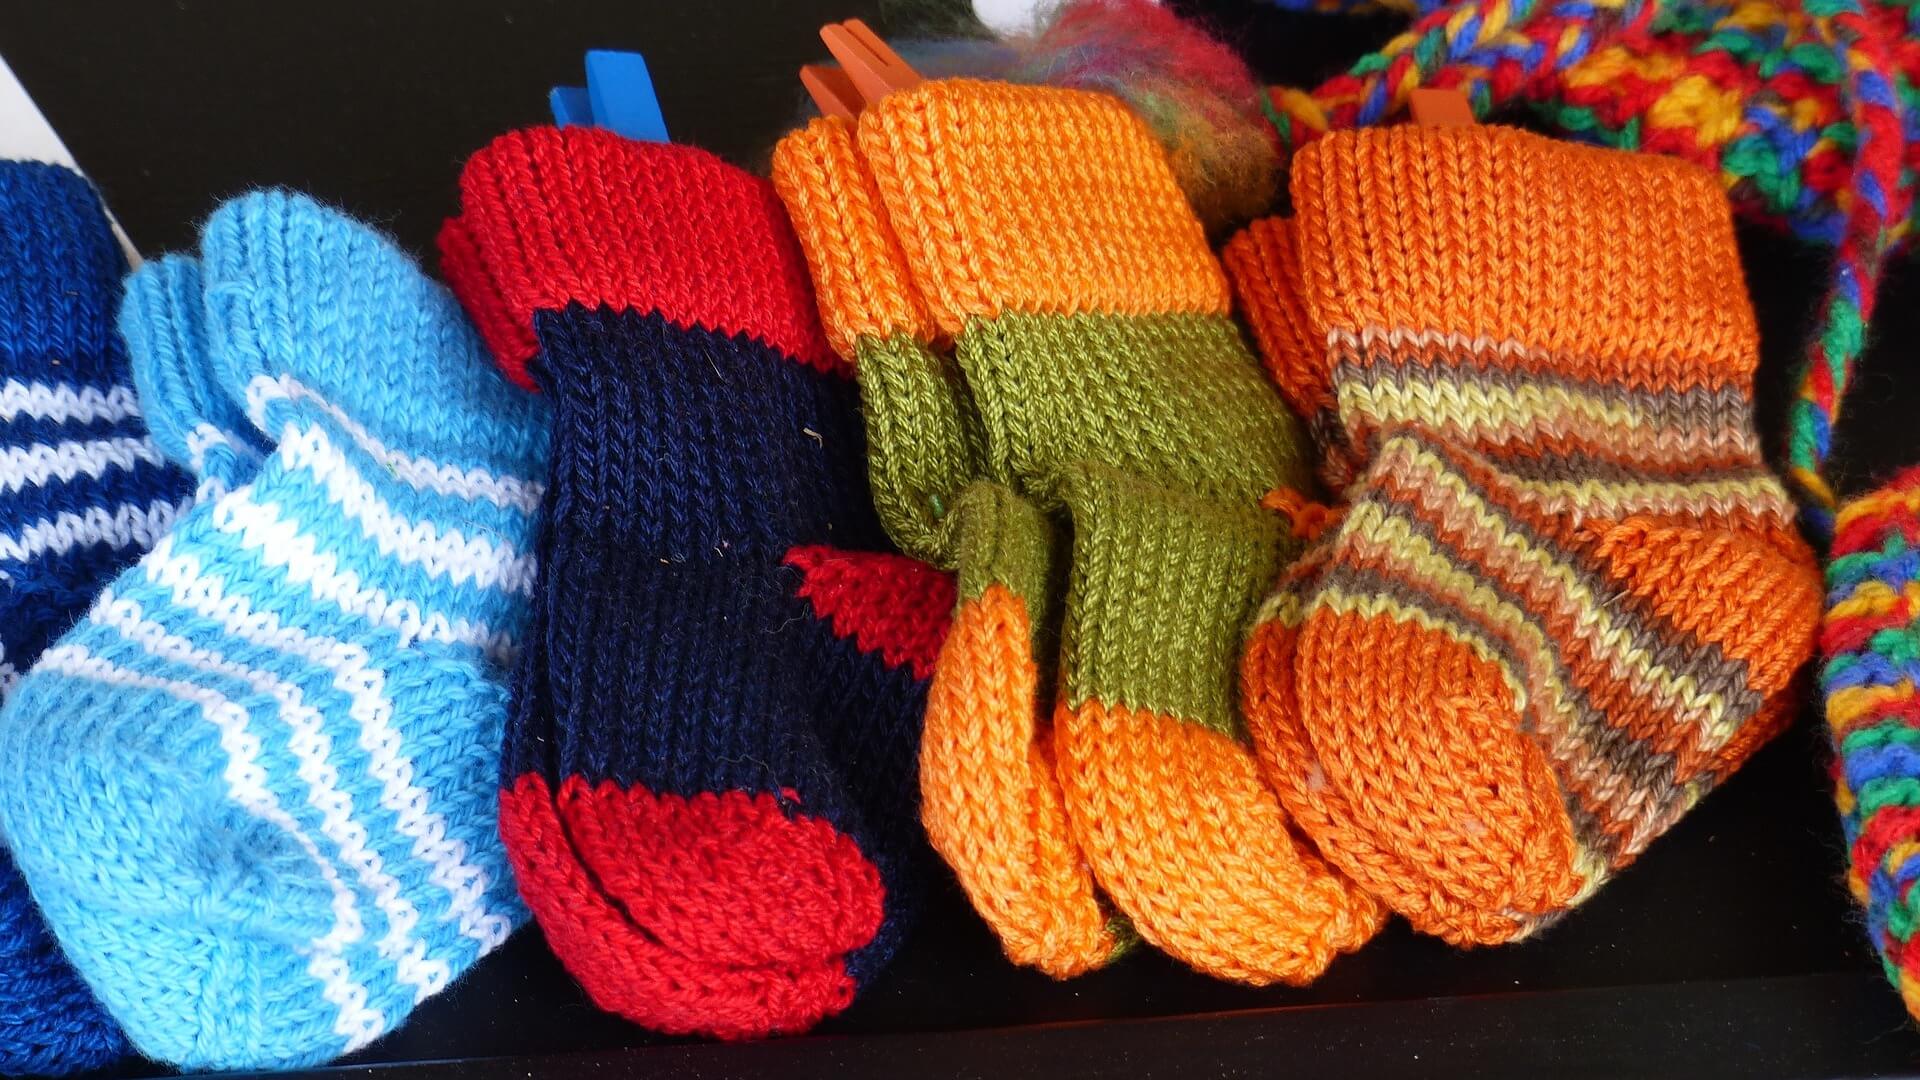 Comment et avec quel matériel tricoter des chaussettes facilement ?